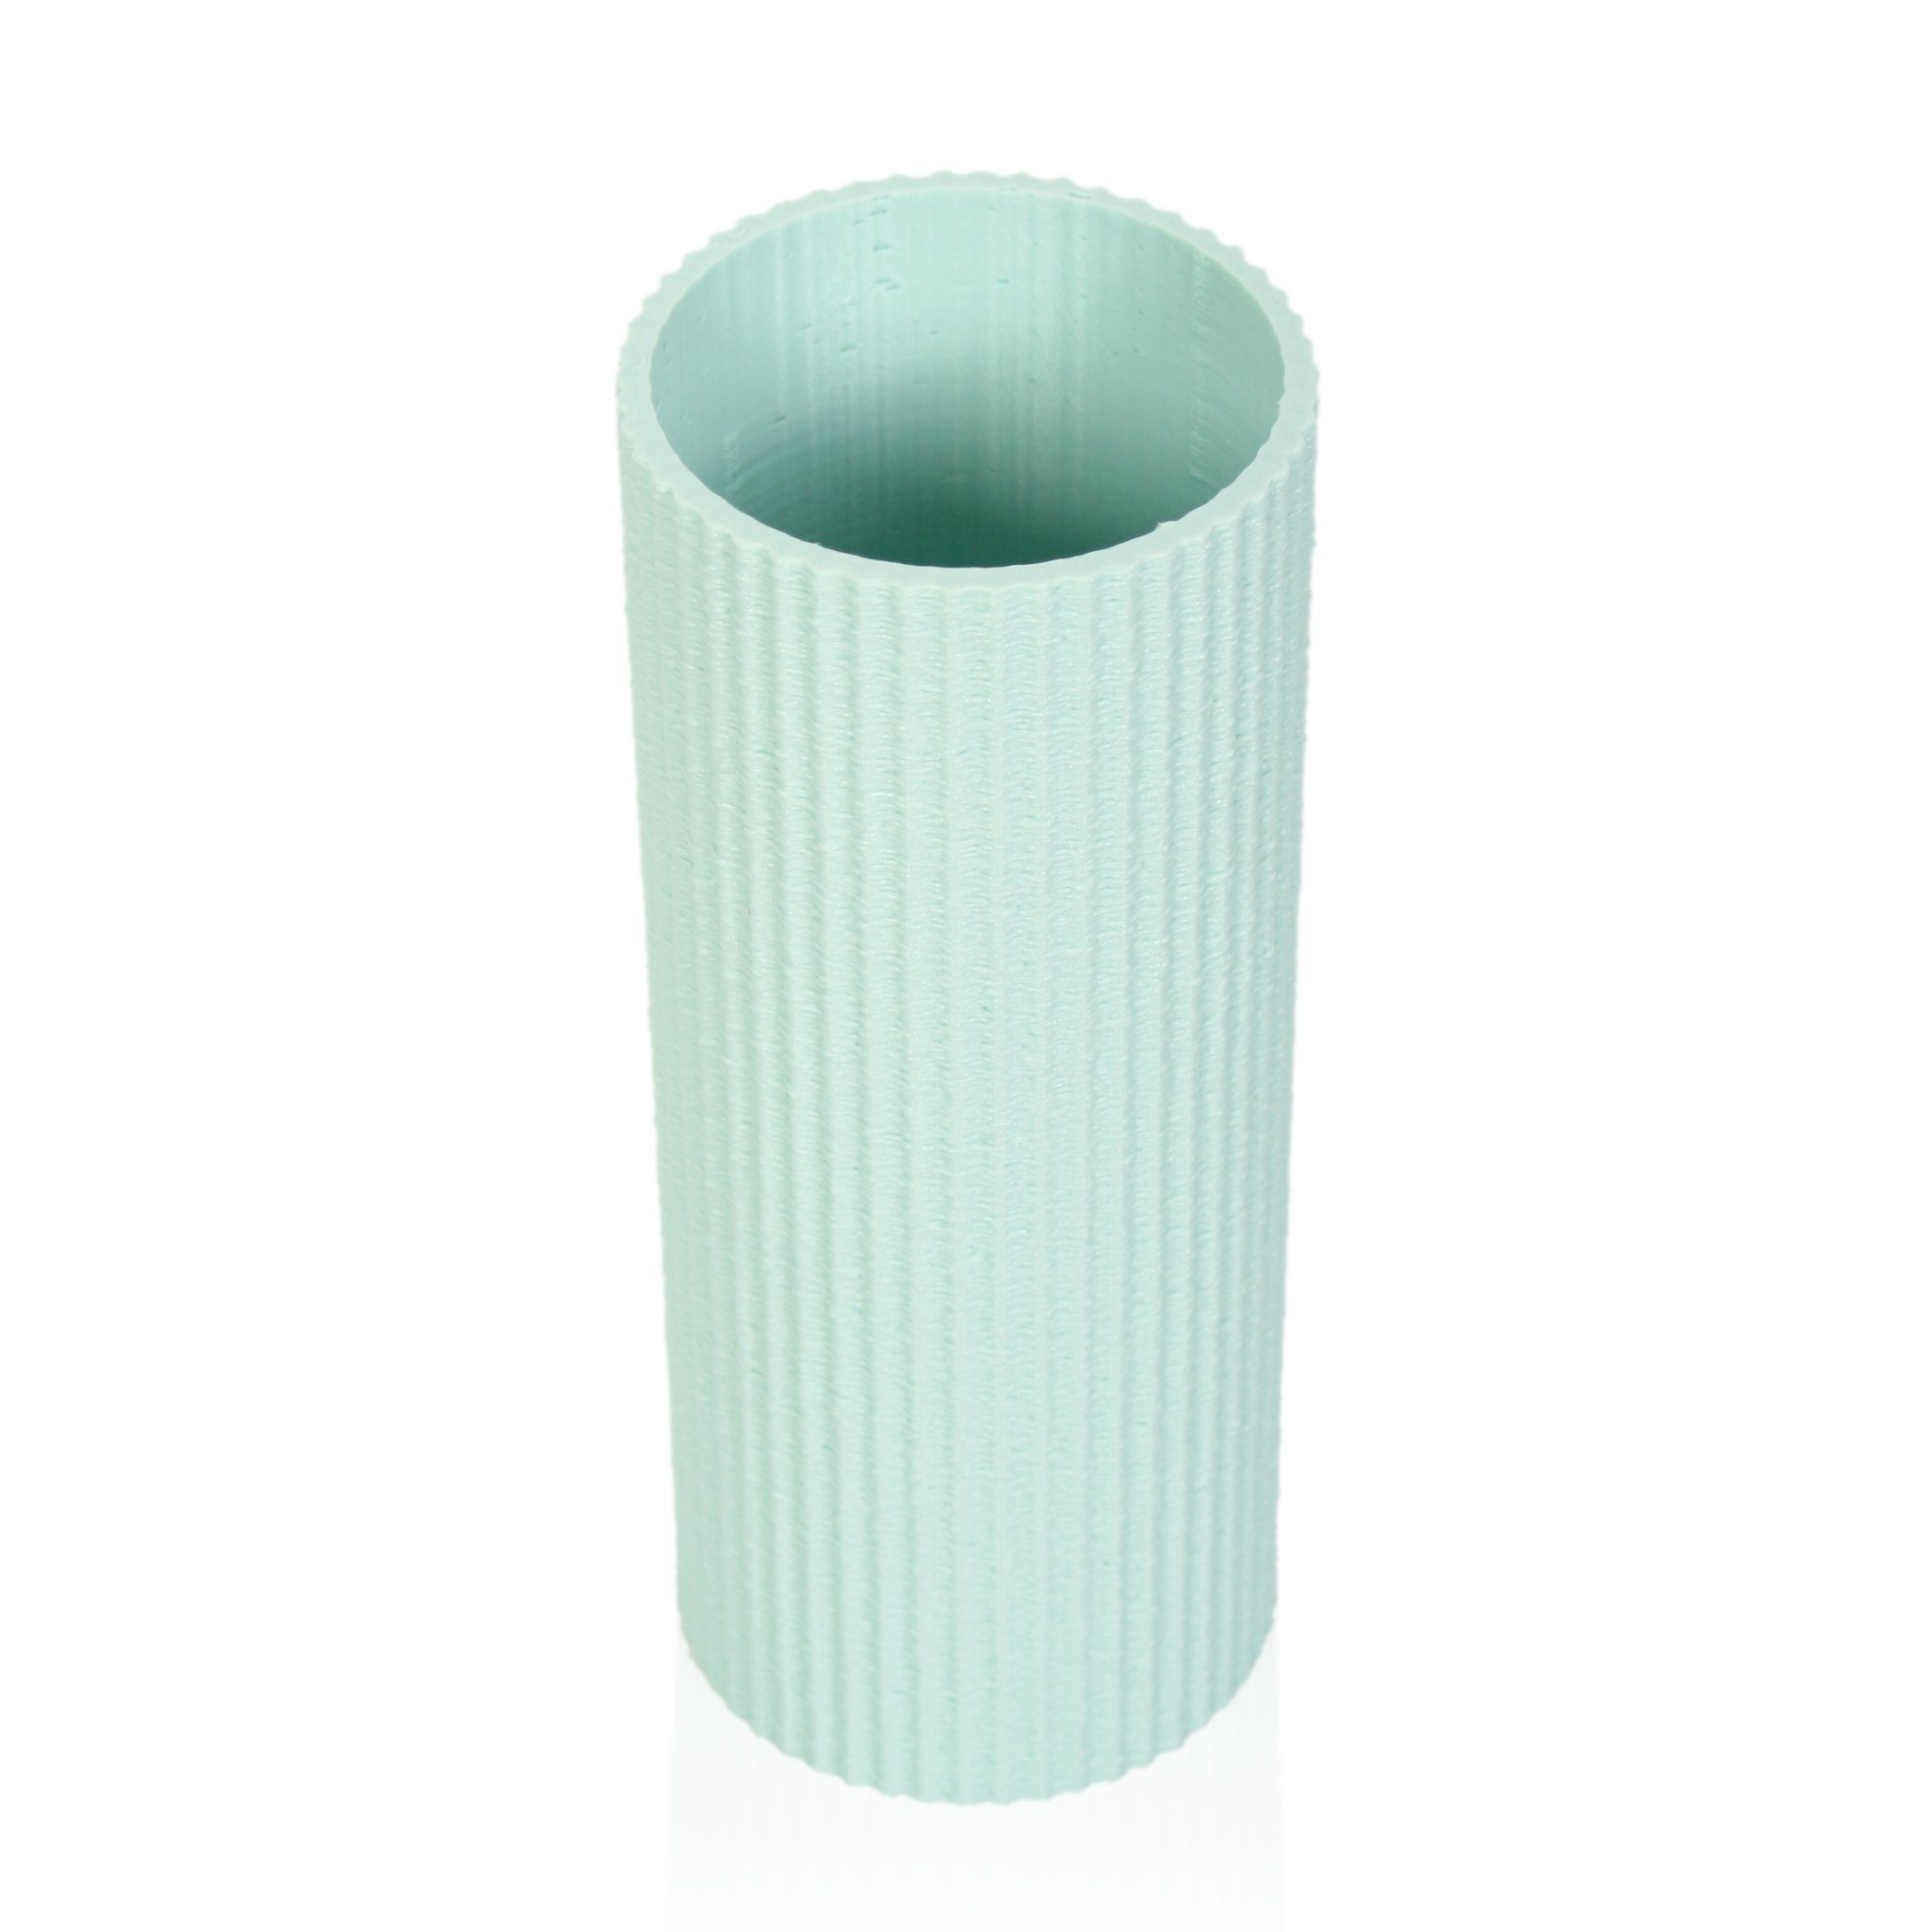 Kreative Feder Dekovase Designer Vase nachwachsenden Rohstoffen; Dekorative aus & Water bruchsicher aus wasserdicht Bio-Kunststoff, Green – Blumenvase